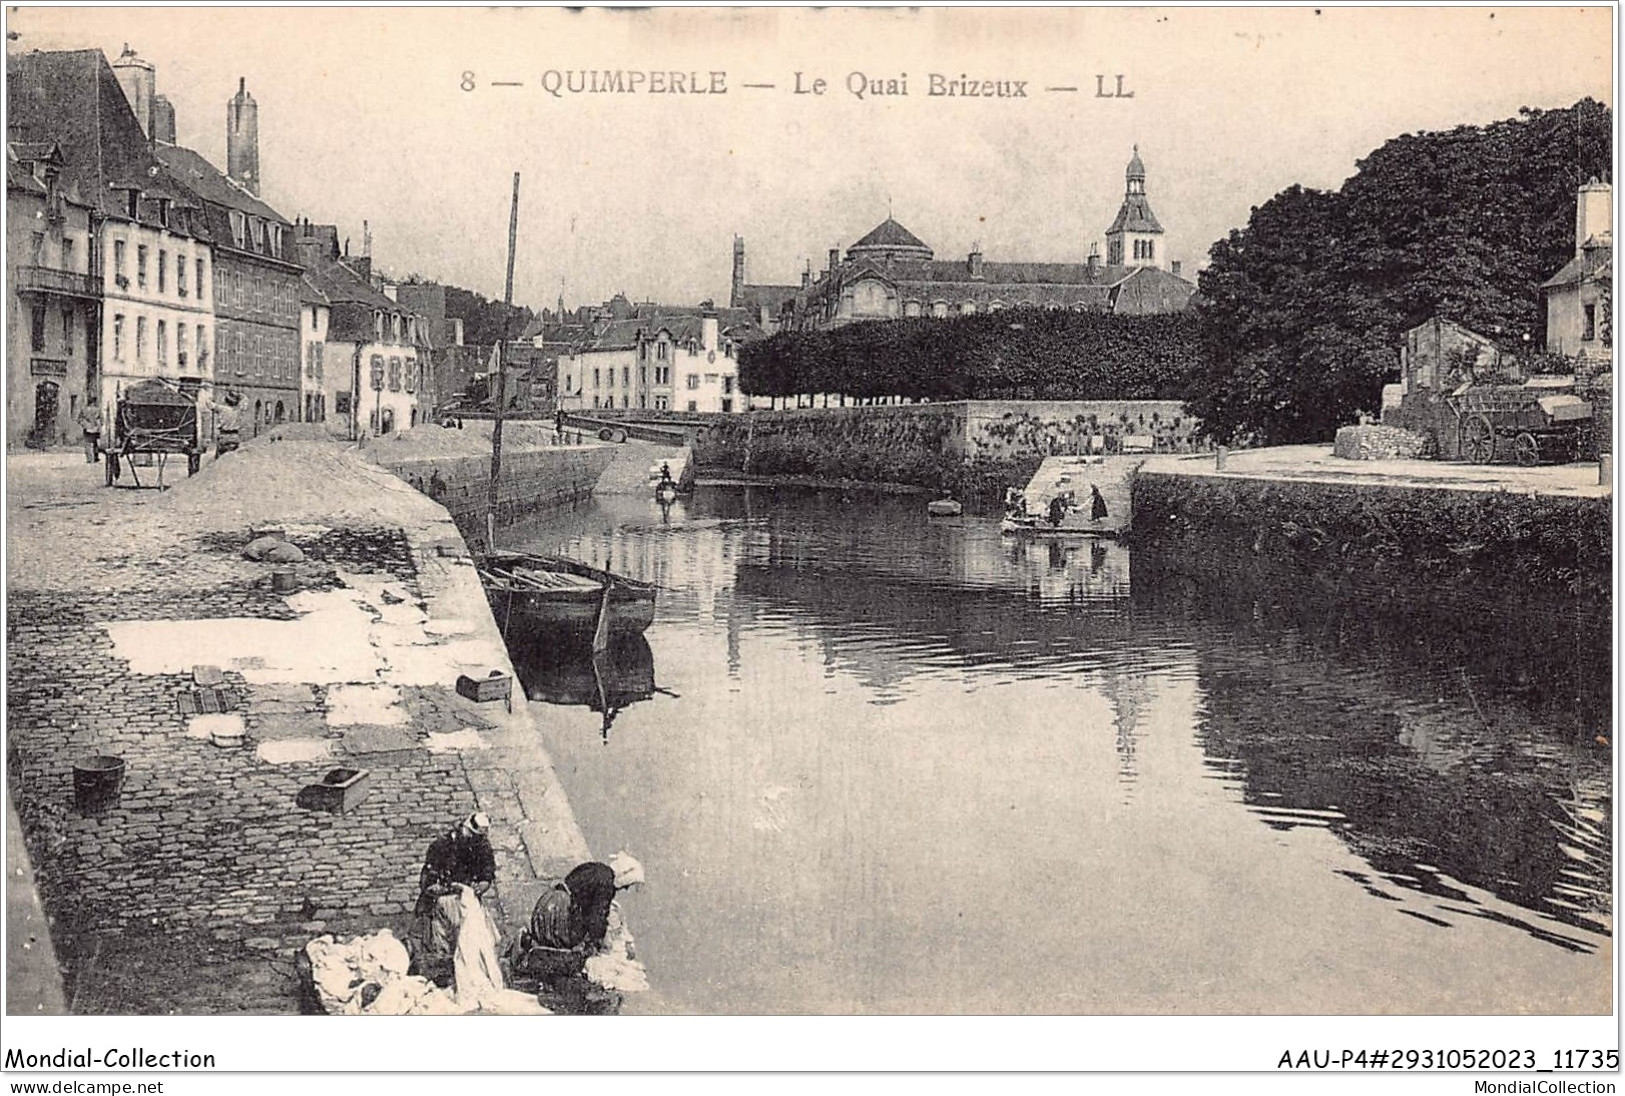 AAUP4-29-0374 - QUIMPERLE - Le Quai Brizeux - Quimperlé